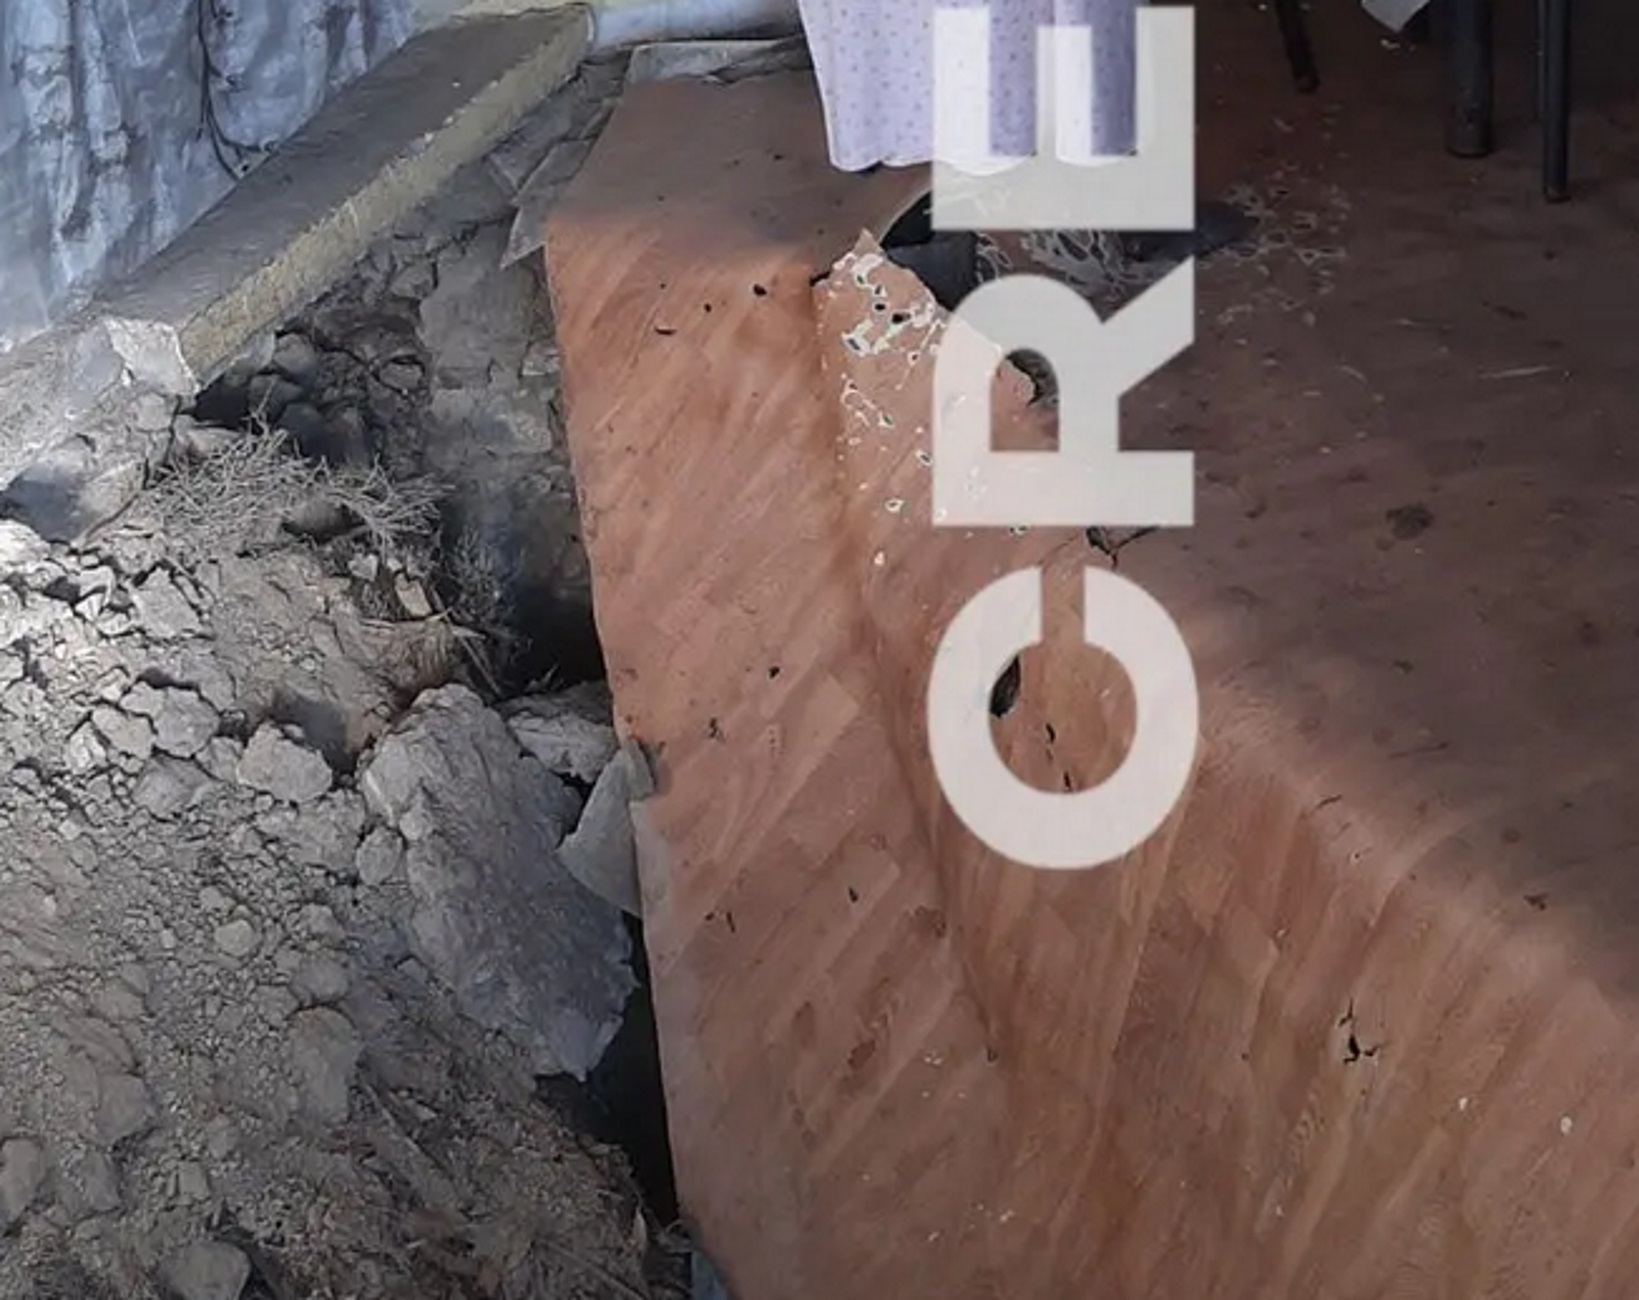 Ρέθυμνο: Έτσι σκοτώθηκε η γυναίκα σπίτι της – Εικόνες από το πάτωμα που κατέρρευσε μέσα στην κουζίνα